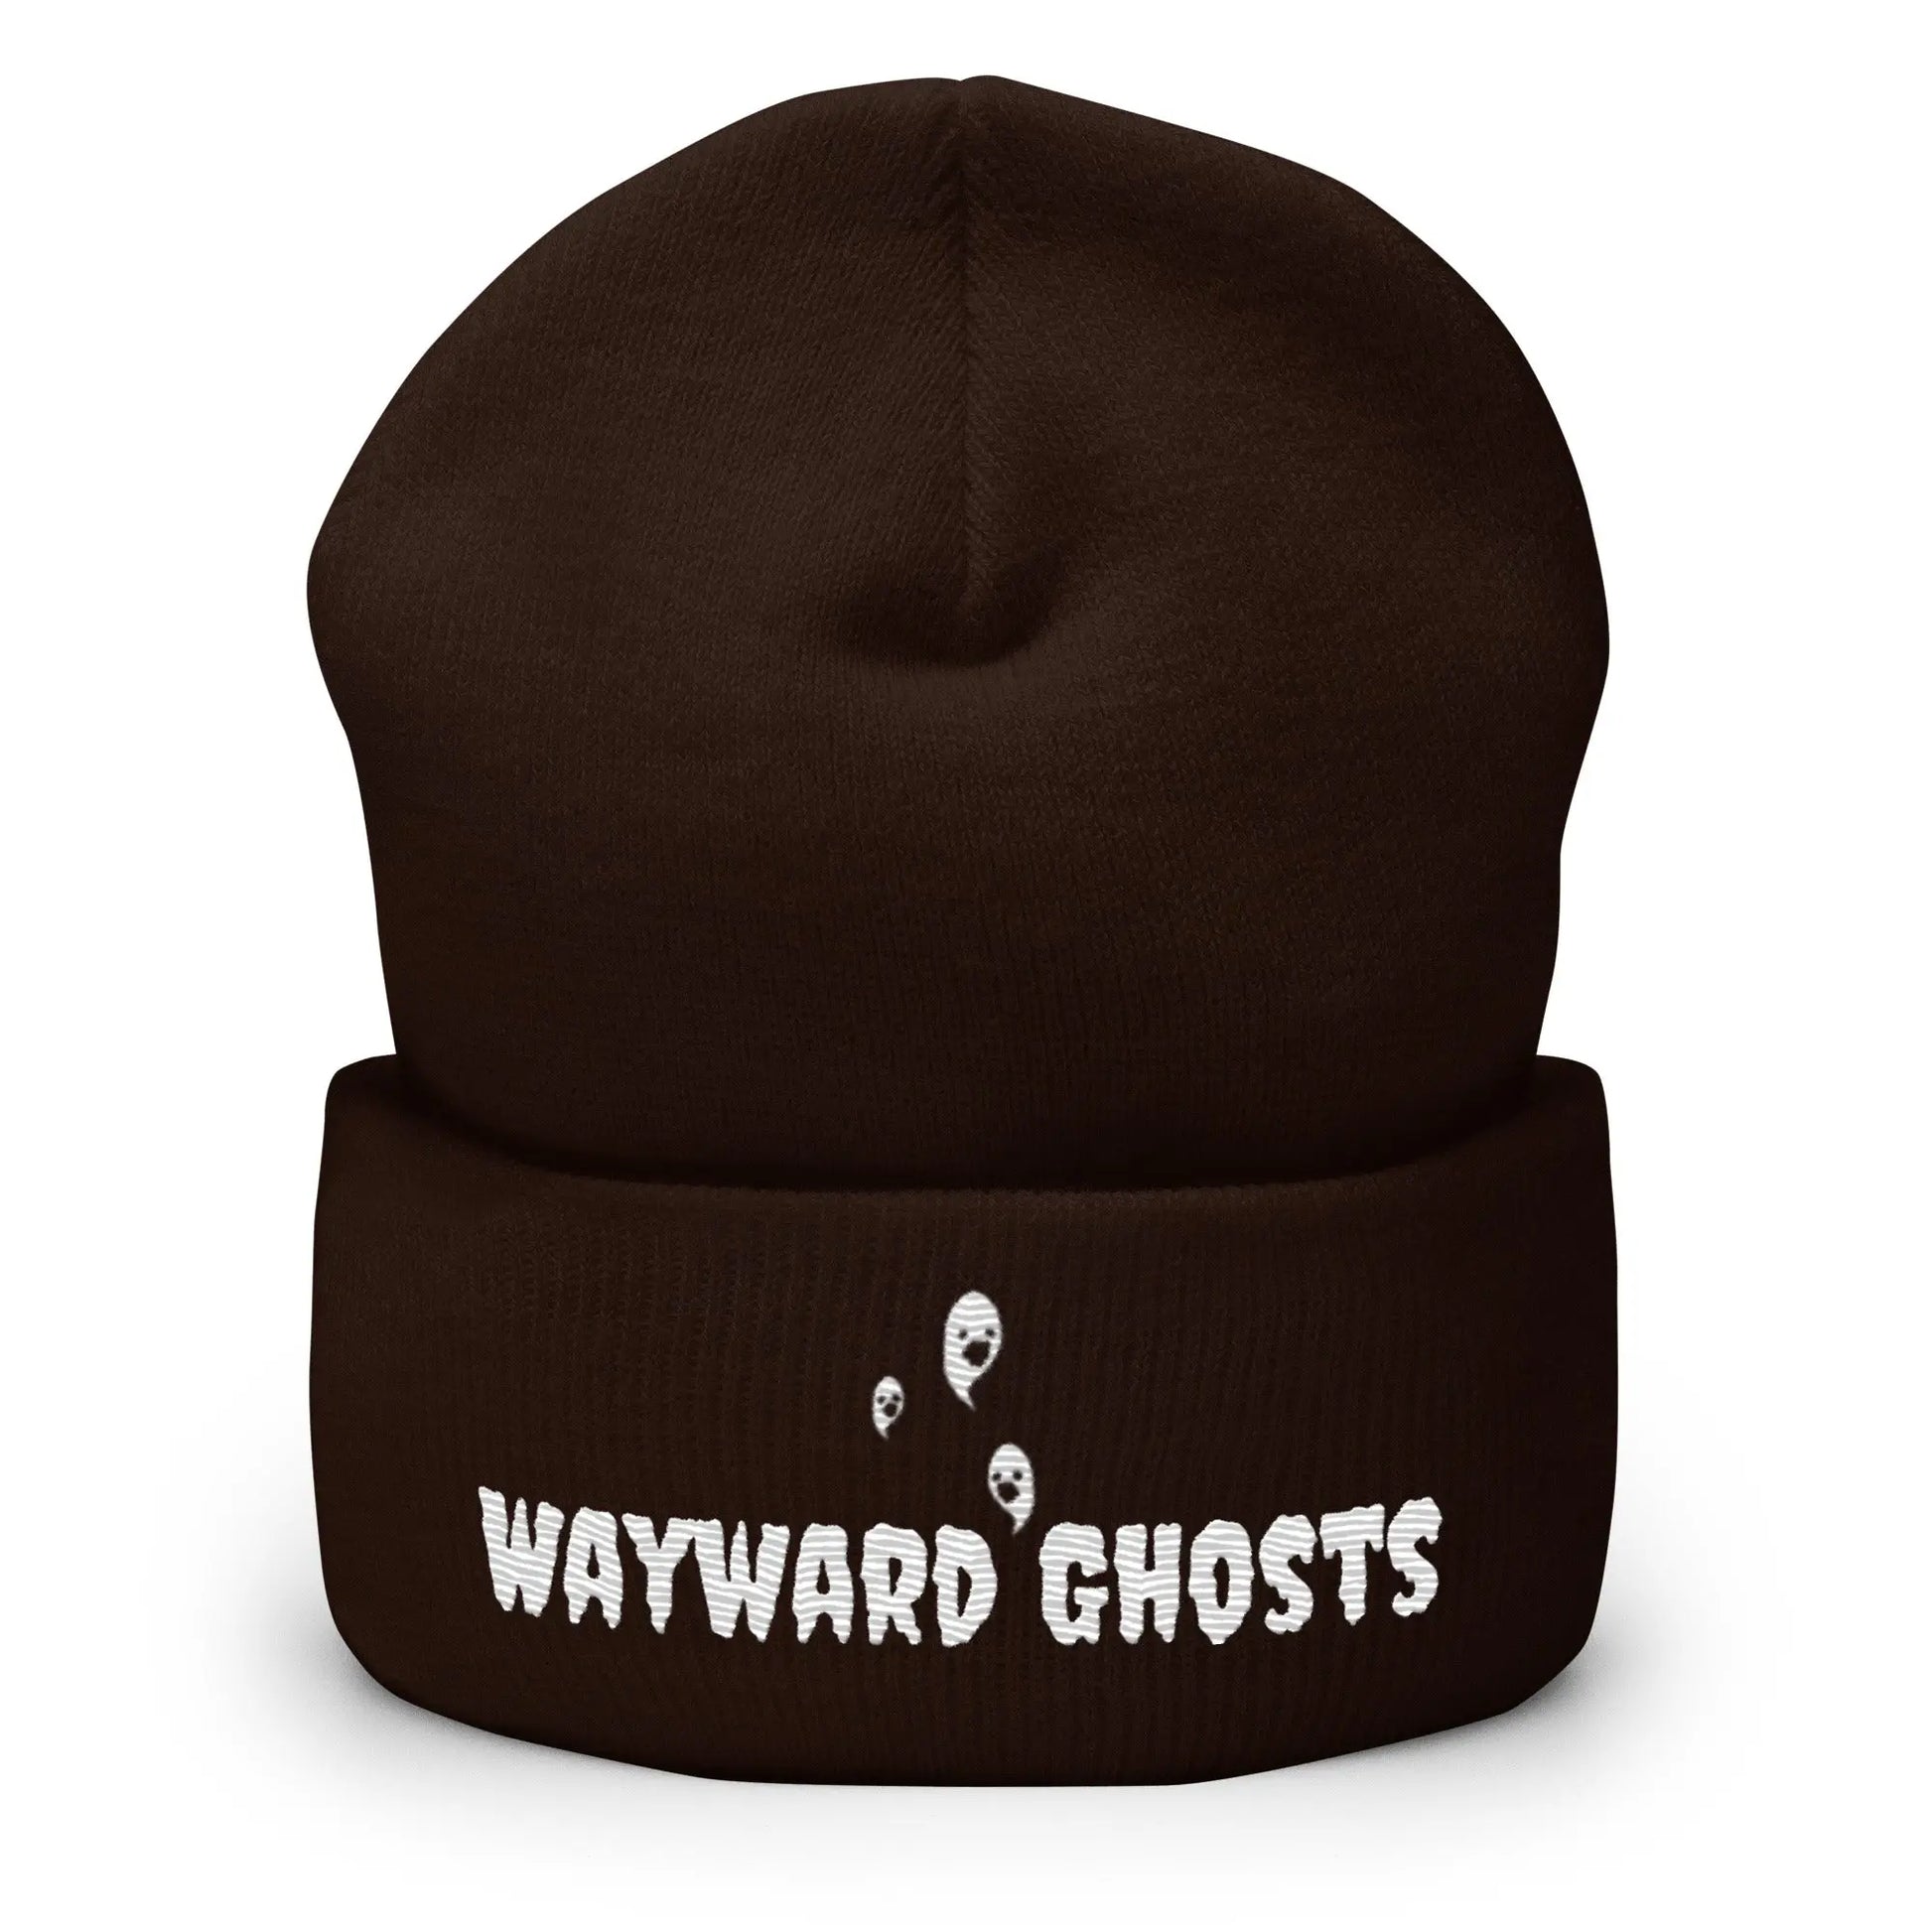 Wayward Ghosts Cuffed Beanie Wayward Ghosts